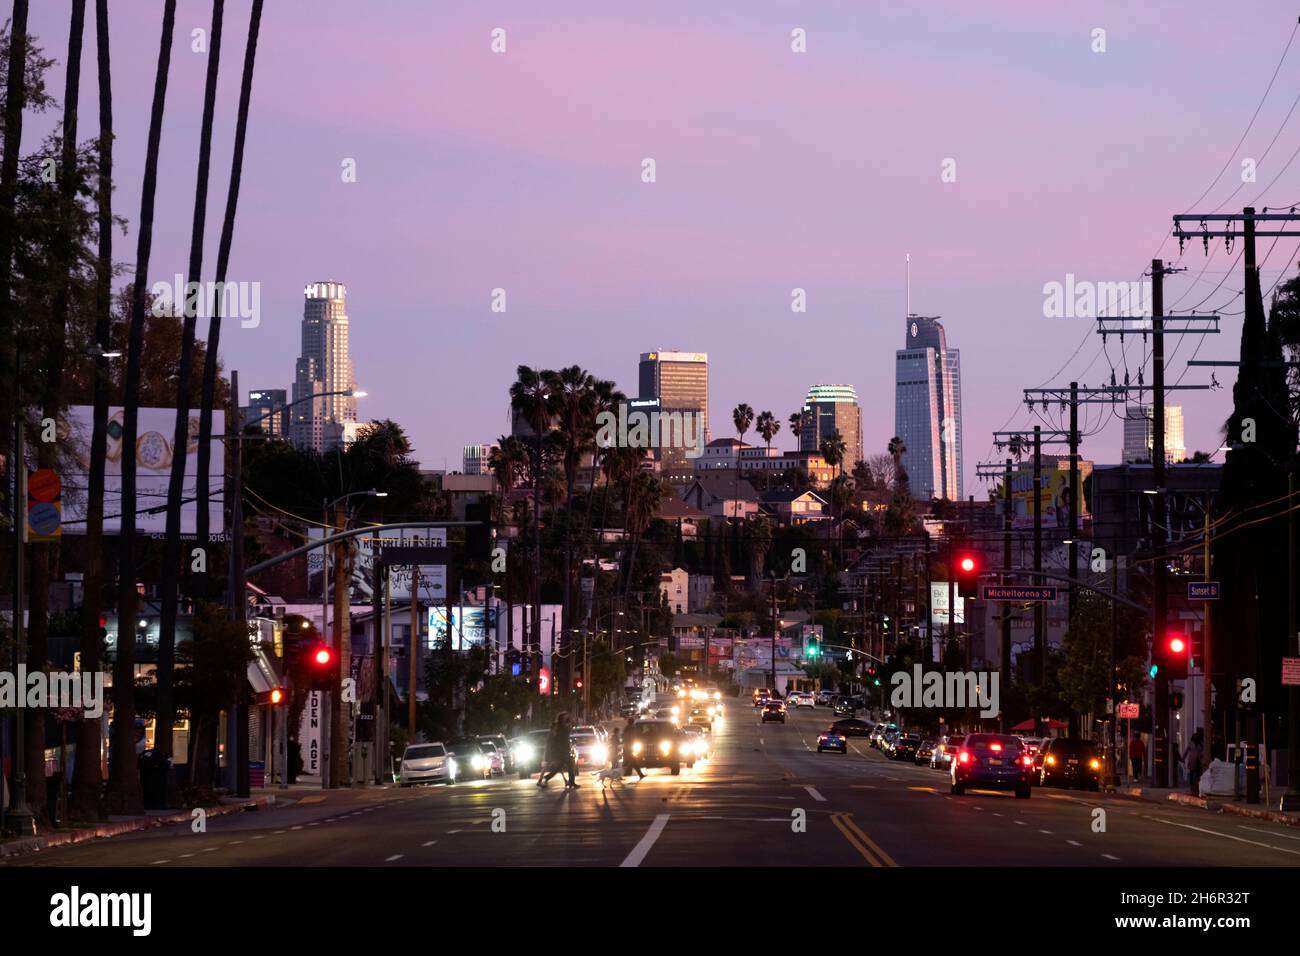 Cielo rosa al atardecer mirando hacia Sunset Boulevard en Silver Lake hacia el barrio de Echo Park y el centro de Los Angeles Foto de stock